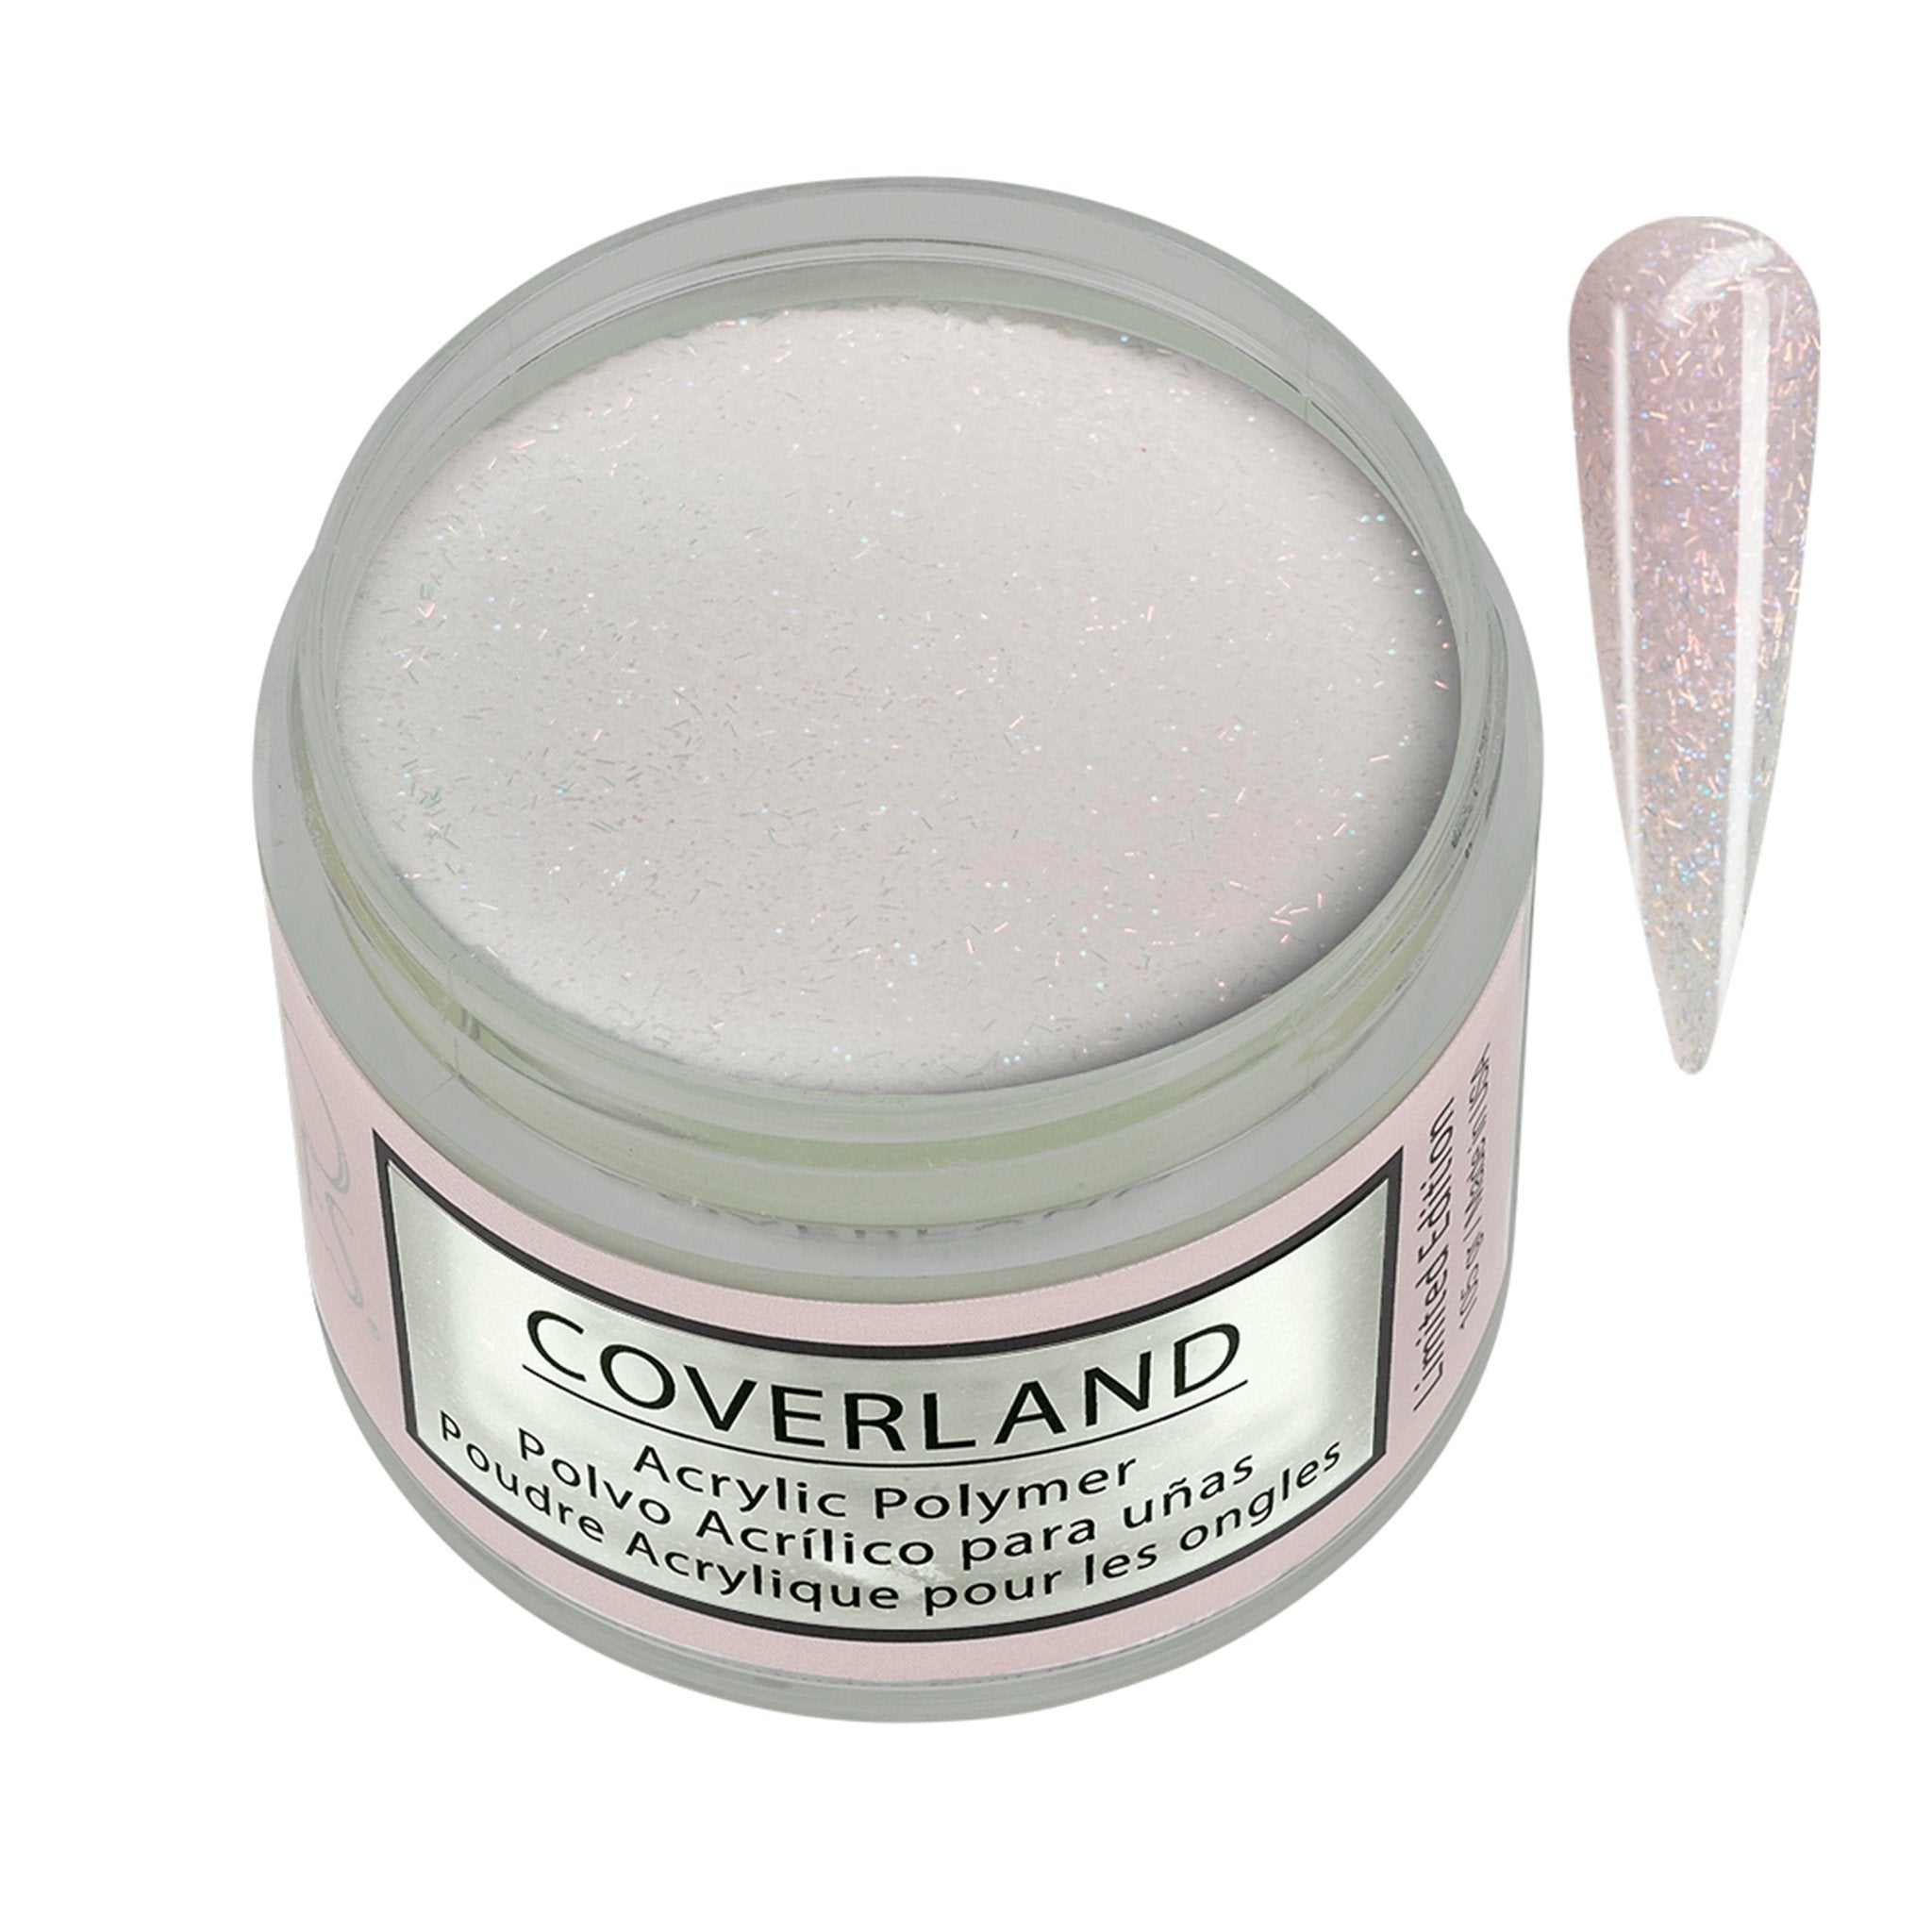 Coverland Acrylic Powder 1.5 oz Cat Eye Black - Limited Edition